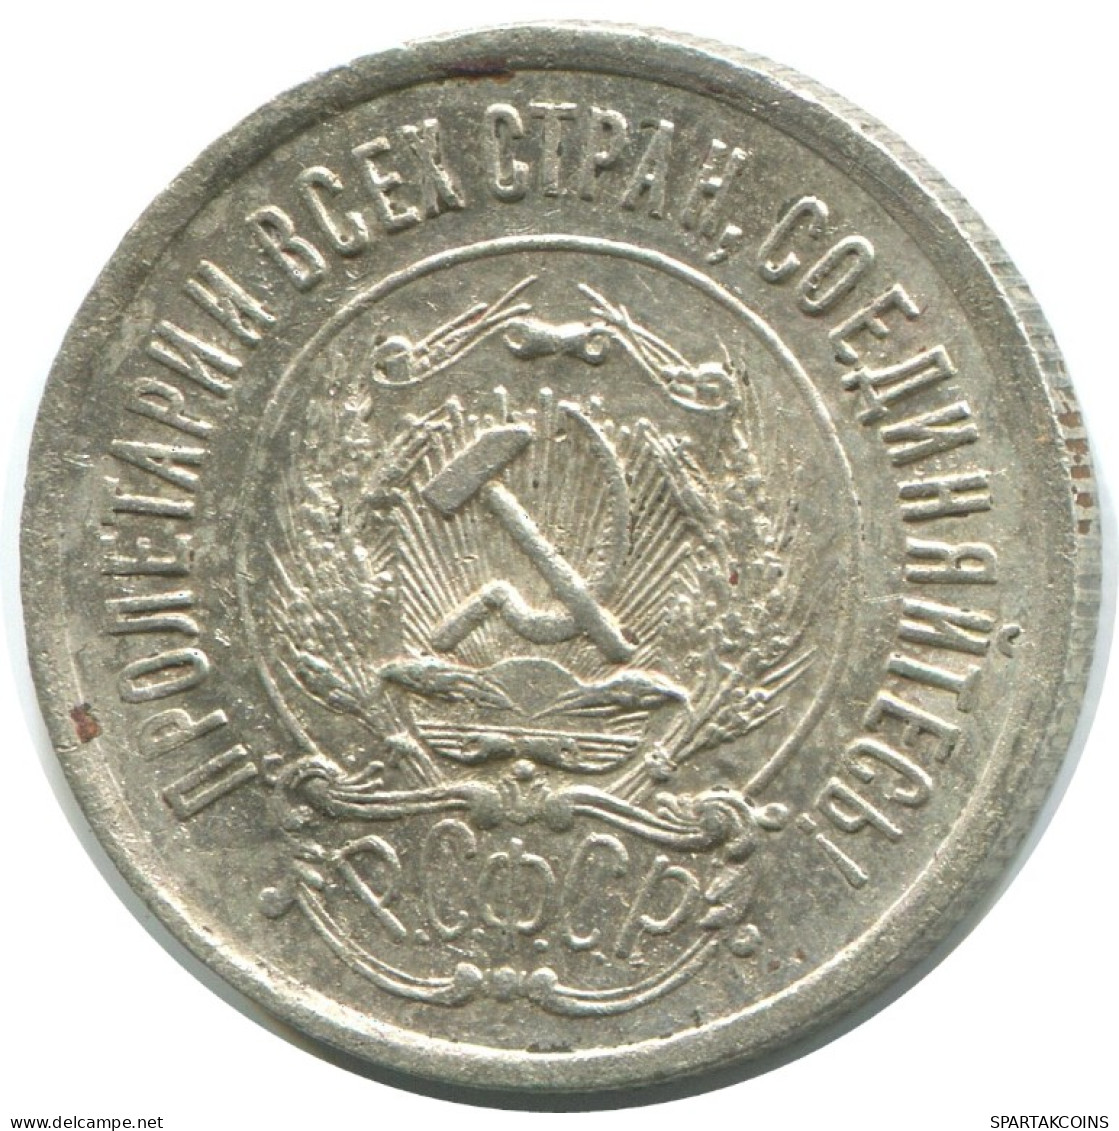 20 KOPEKS 1923 RUSSIA RSFSR SILVER Coin HIGH GRADE #AF407.4.U.A - Russland